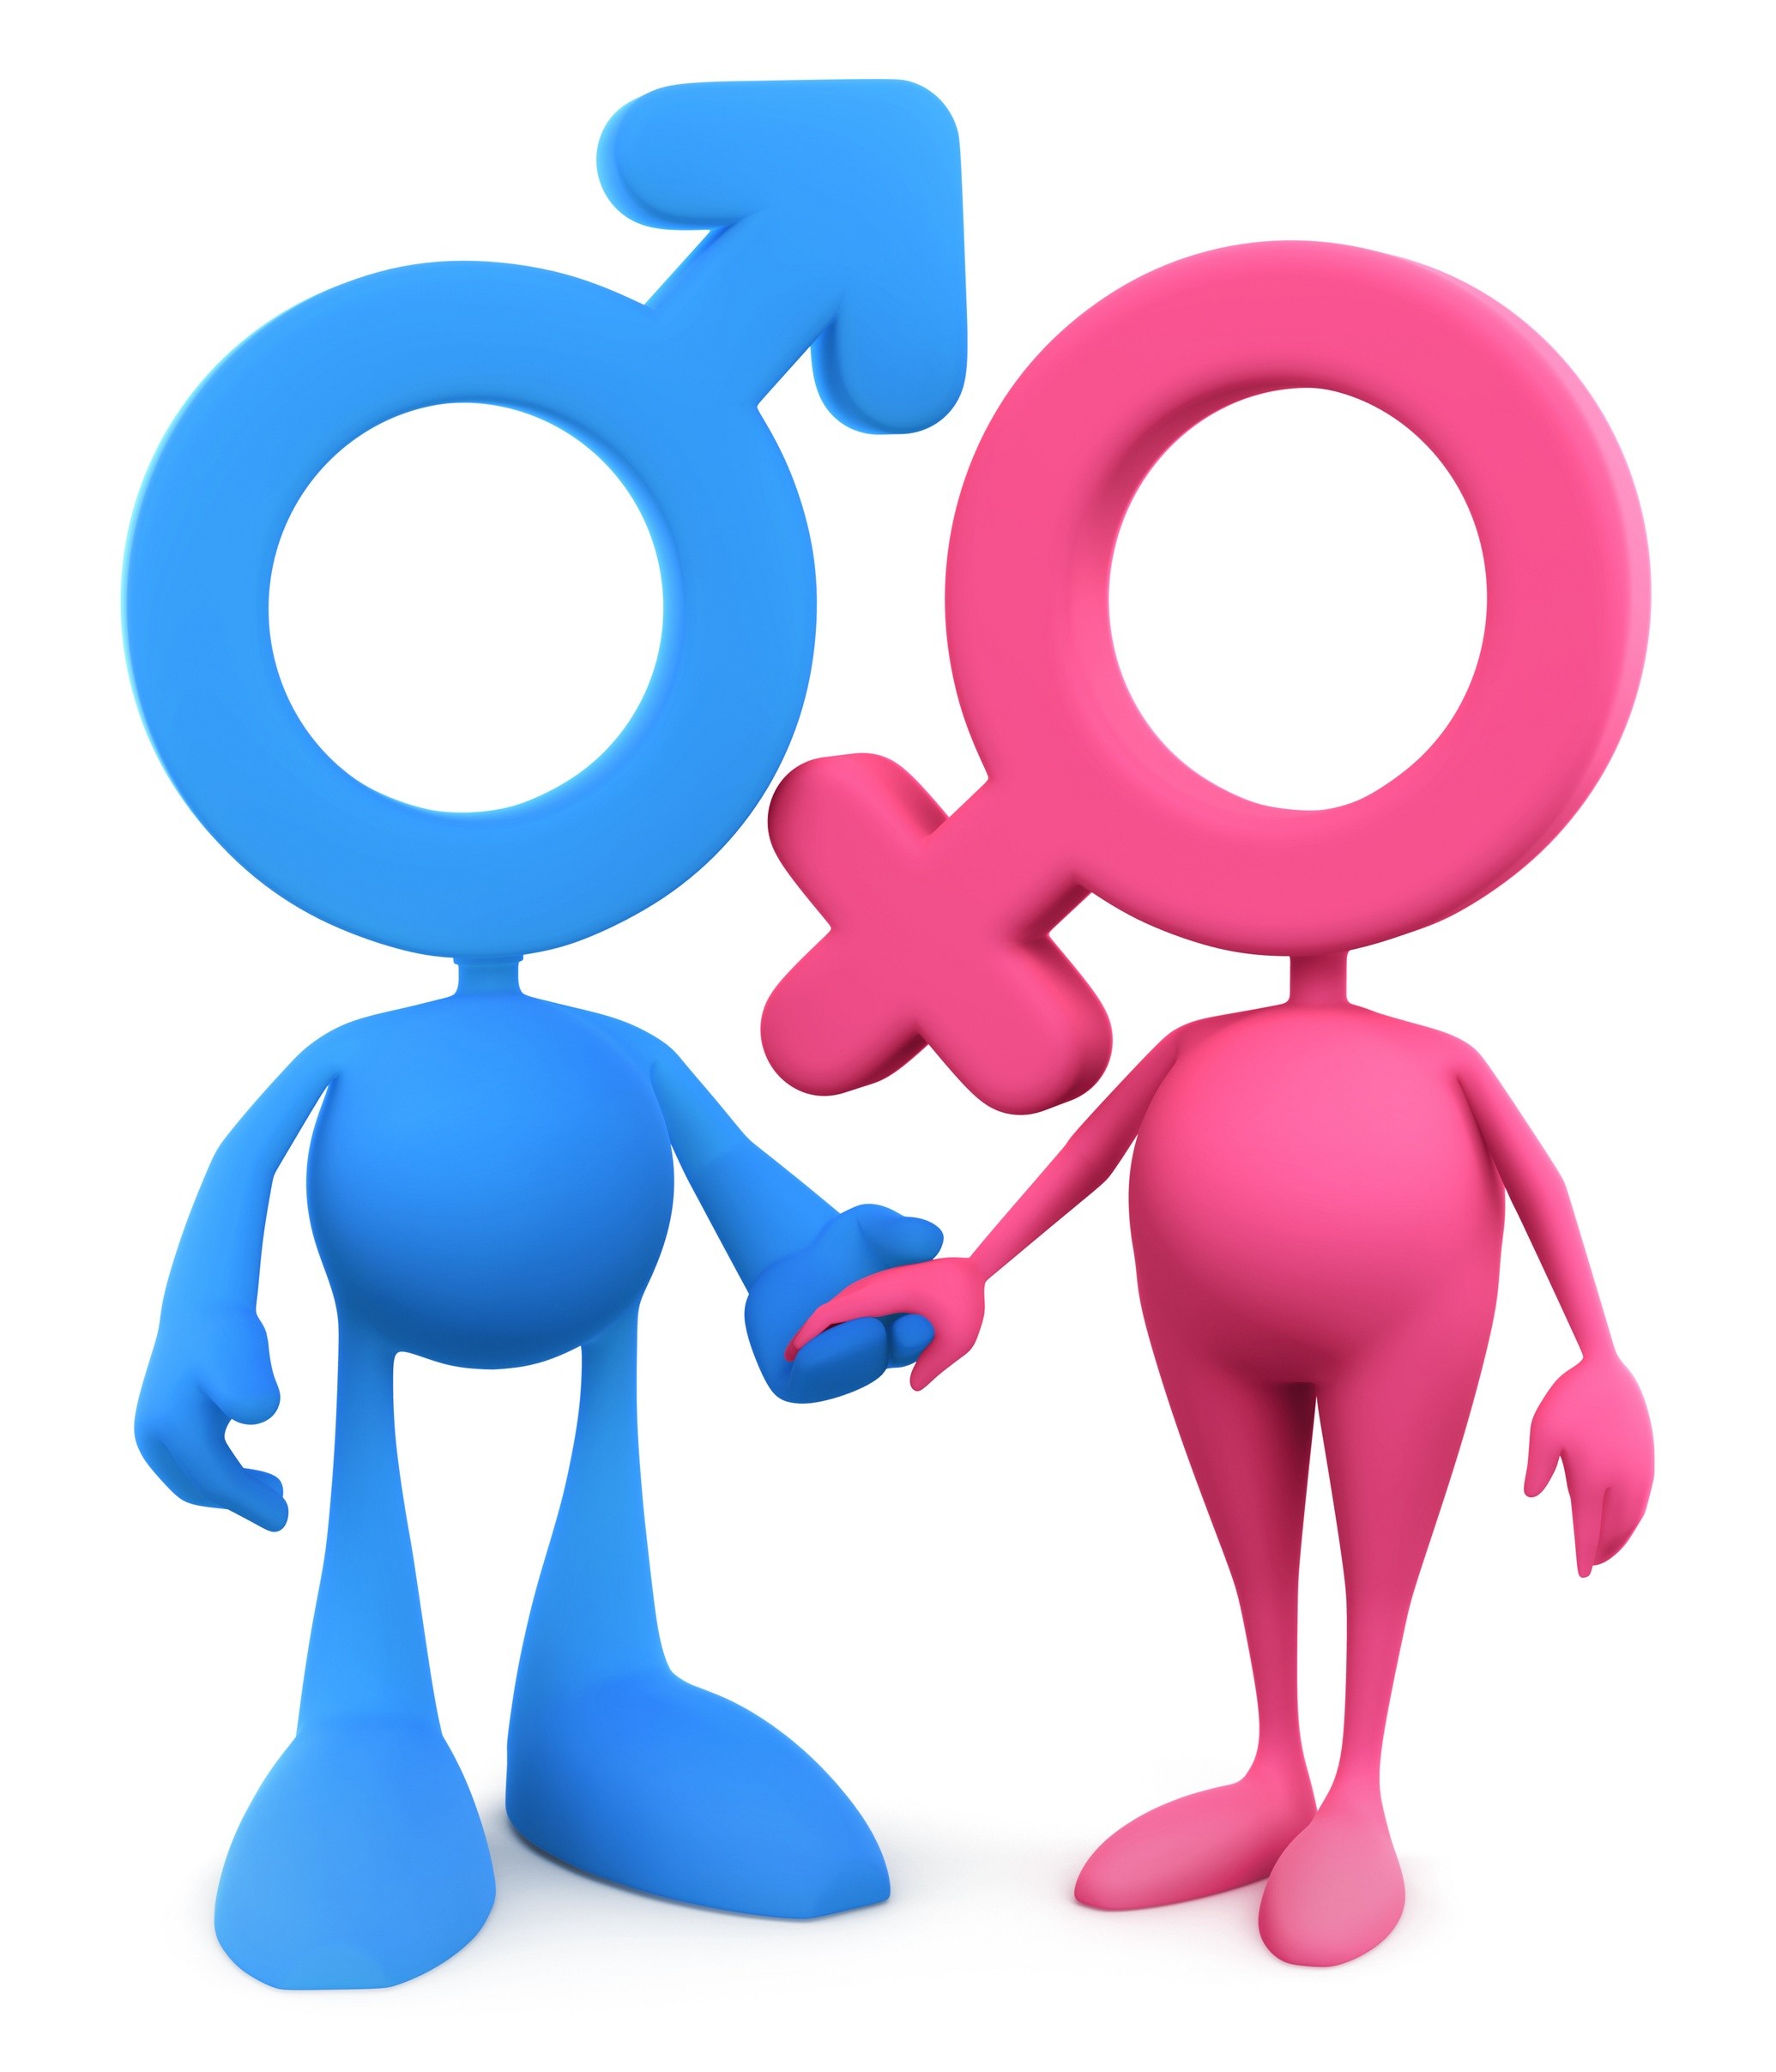 Знак жен пола. Пол мужской и женский. Мужской и женский знак. Значки мужского и женского пола. Символ мужчины и женщины.